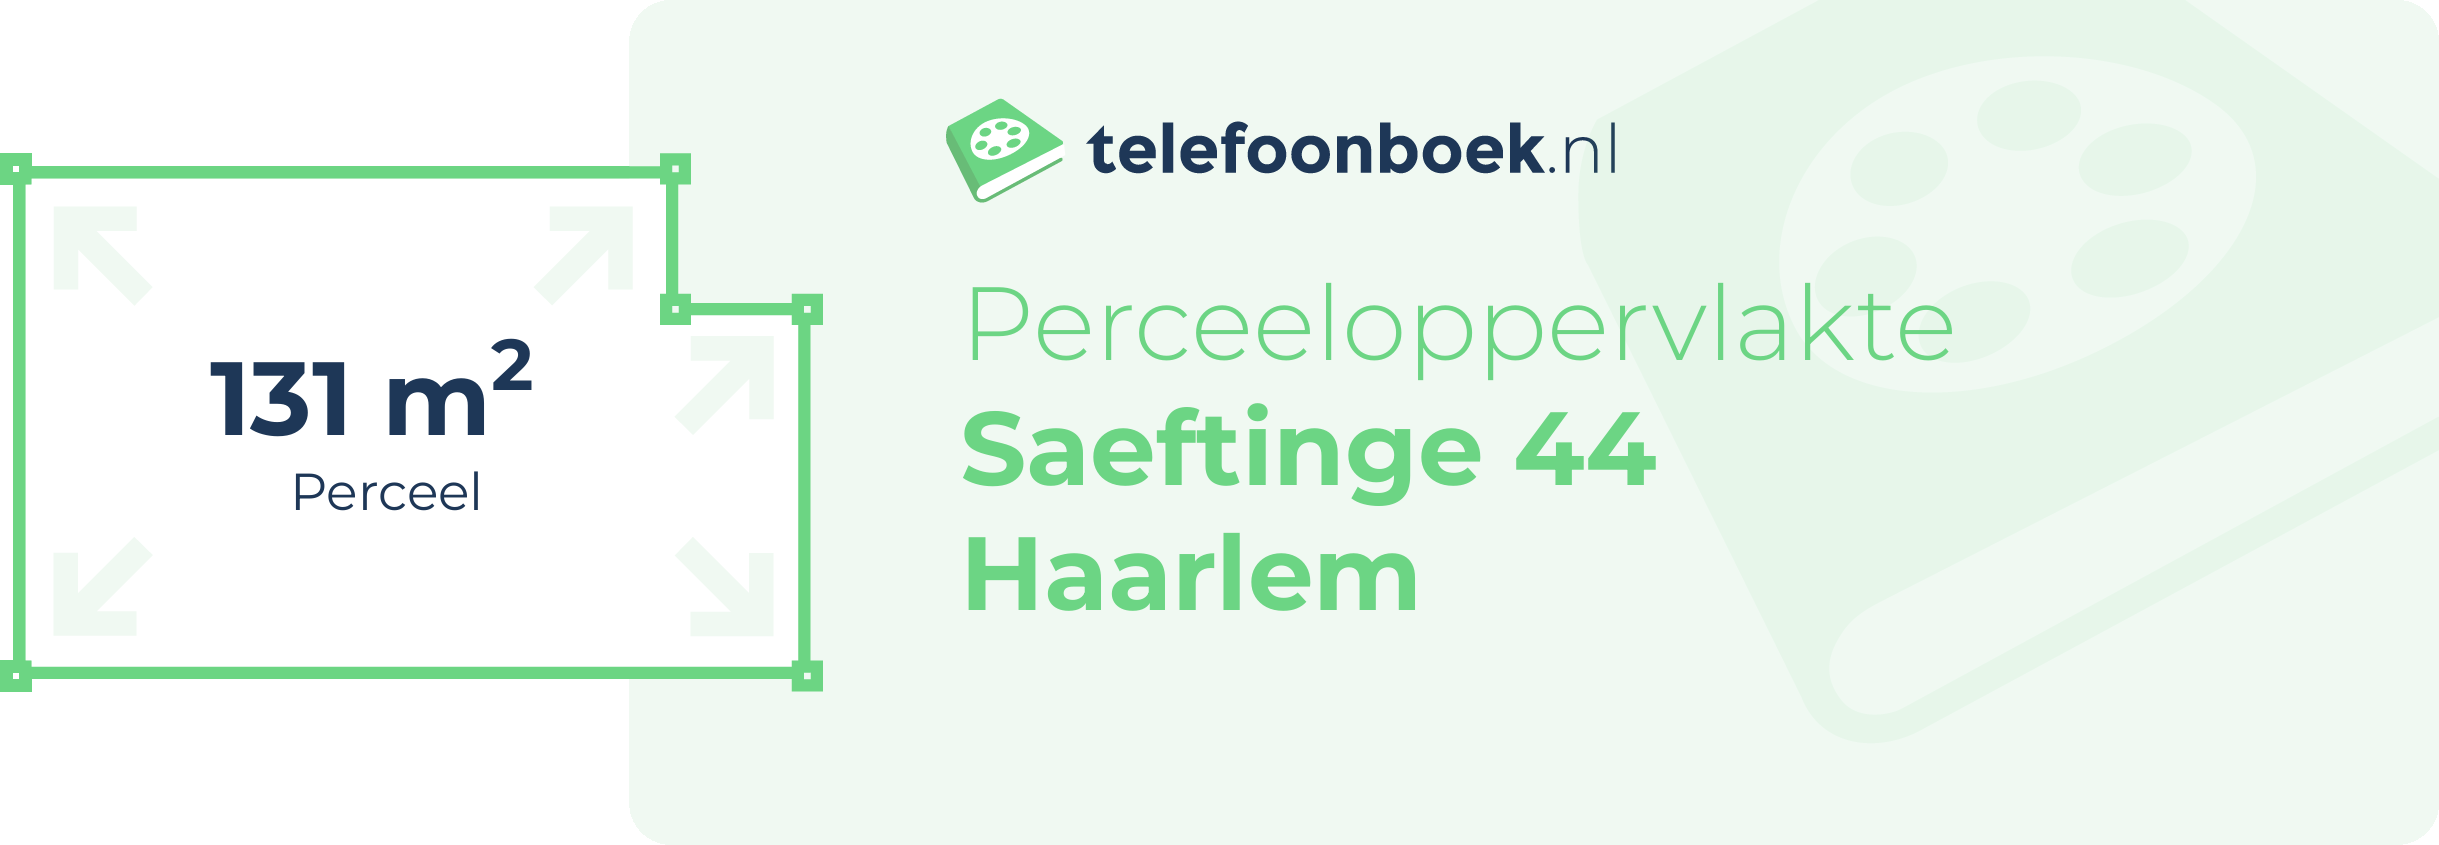 Perceeloppervlakte Saeftinge 44 Haarlem